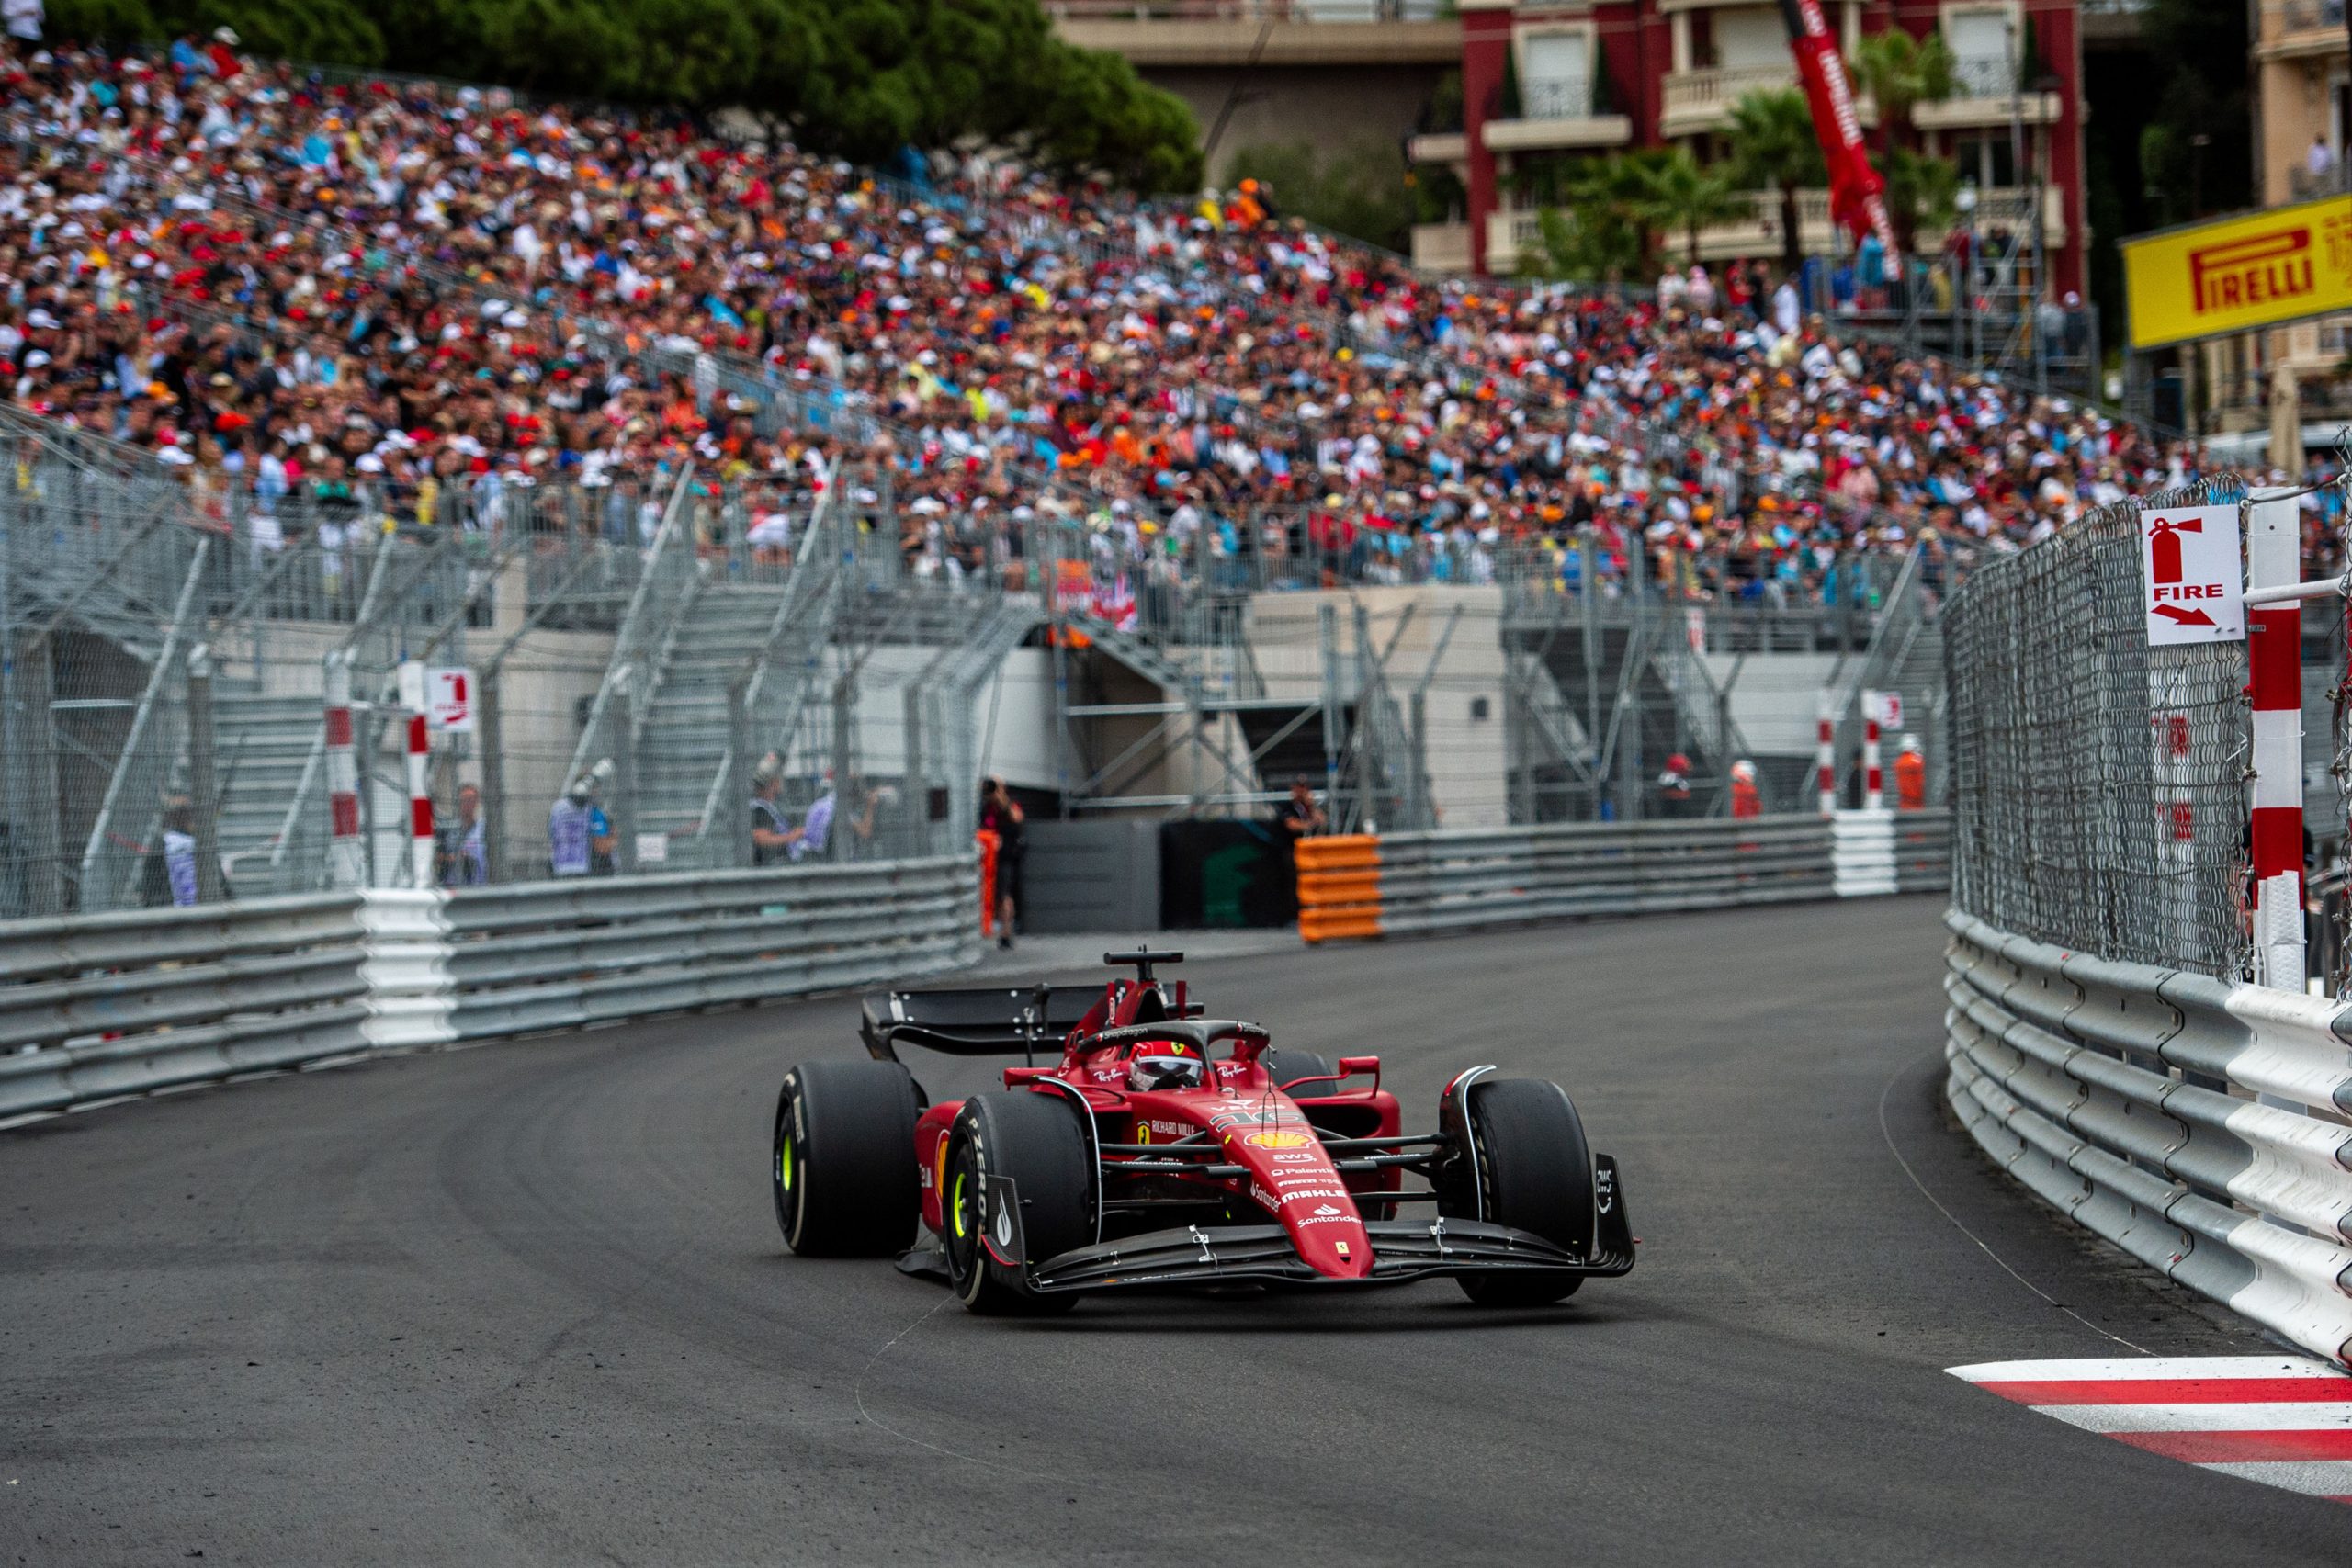 Opinioni e pensieri sul Gp di Monaco di F1 del 2022